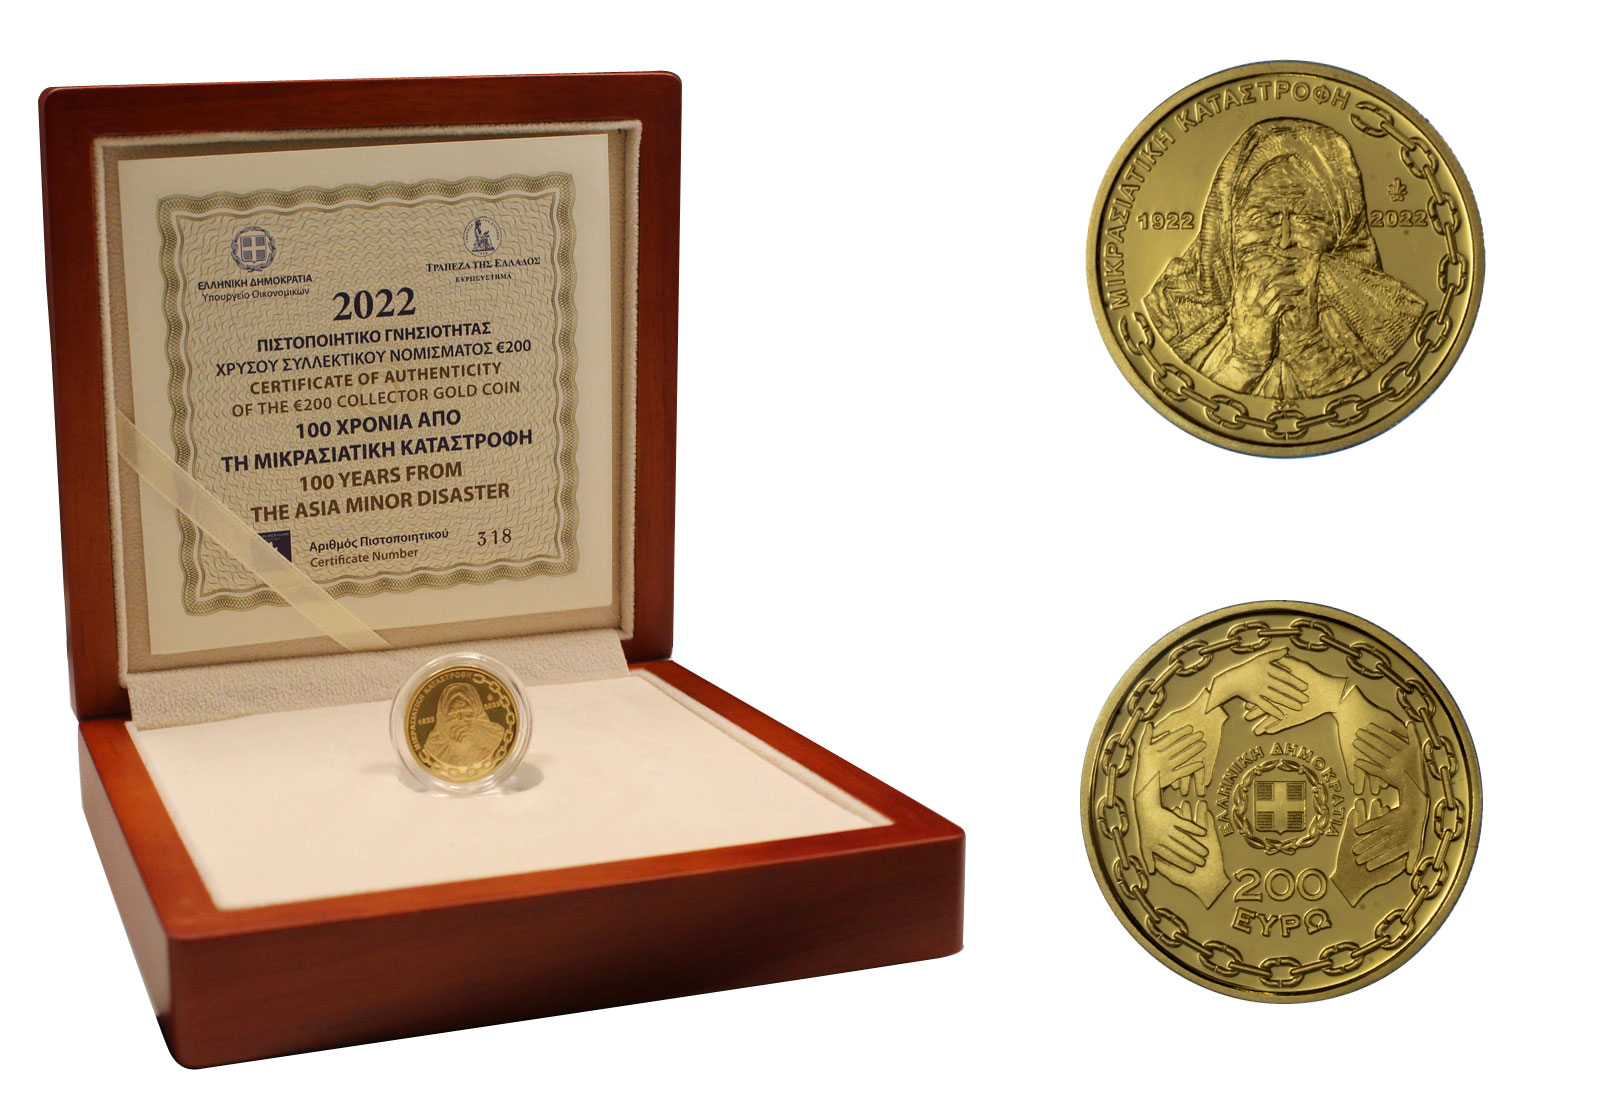 "100 anni dalla catastrofe dell'Asia Minore" - 200 euro (sterlina) gr. 7,98 in oro 917/000 - Tiratura 750 pezzi